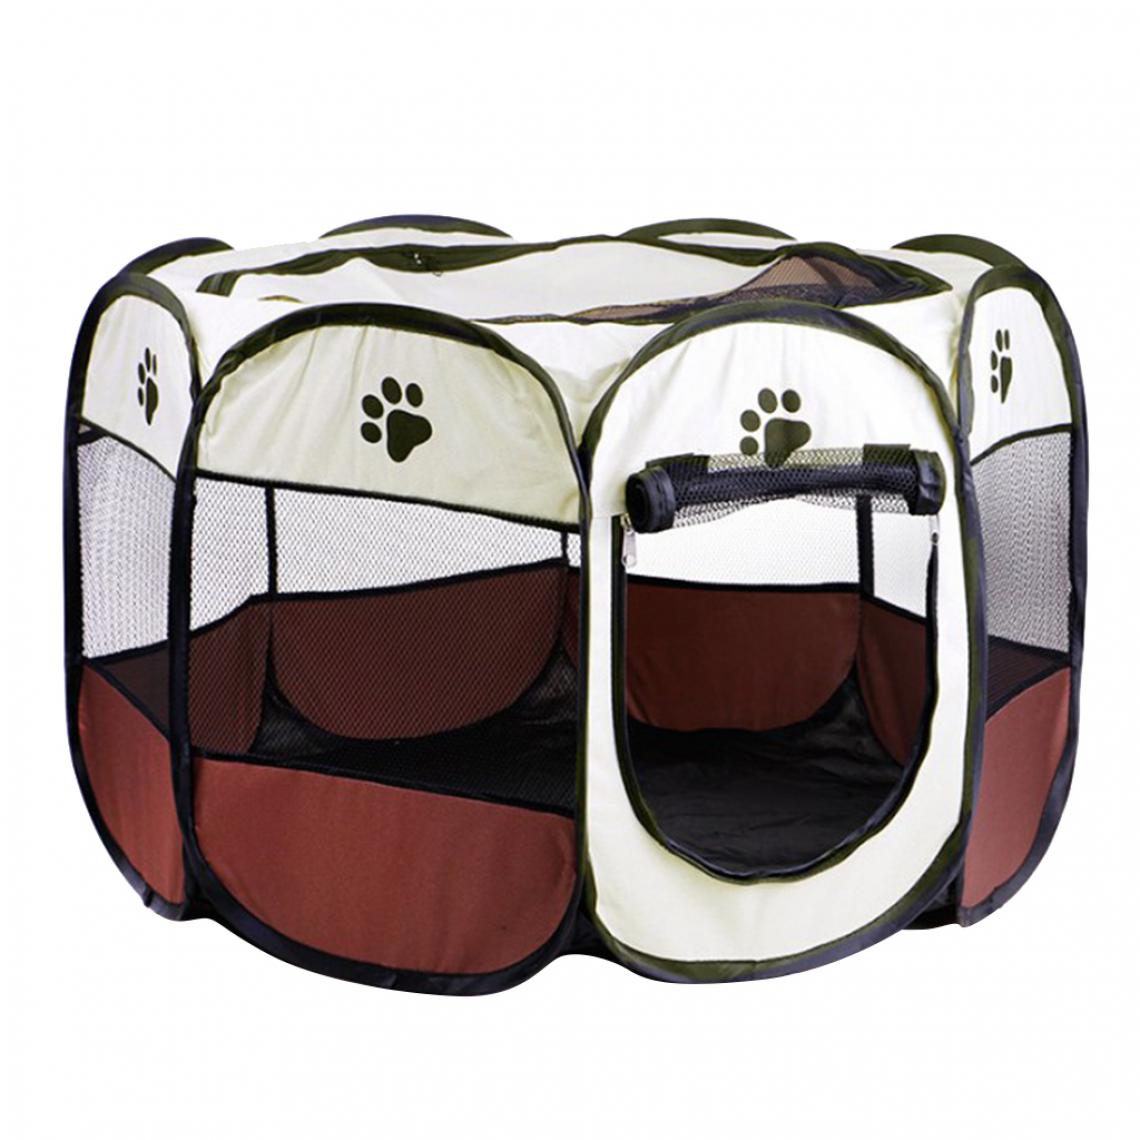 marque generique - Pet Pliable Playpen Portable 8-Panel Kennel Fences Tent Brown_S - Clôture pour chien